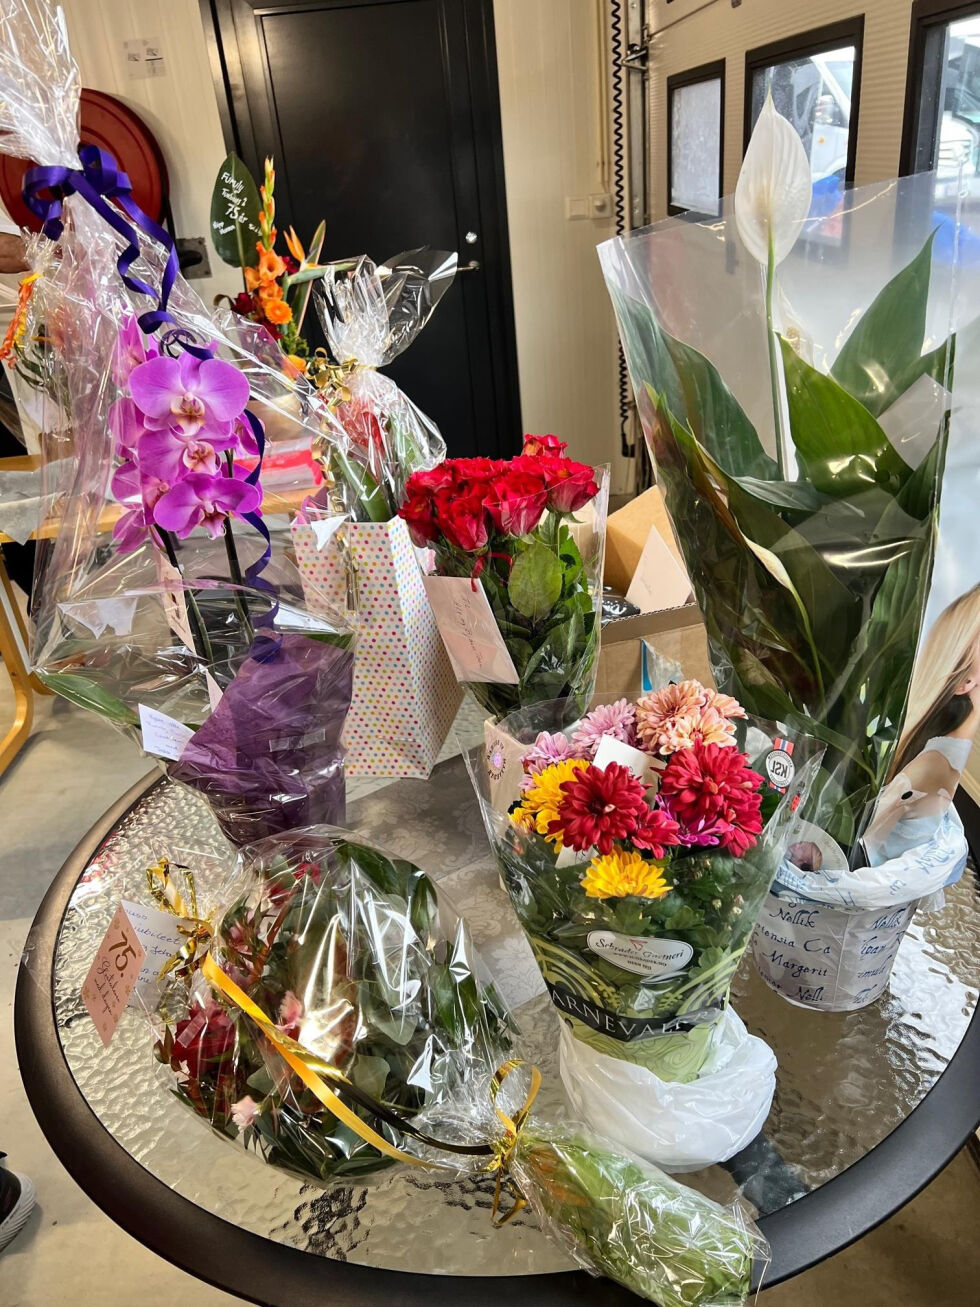 Blomstergaver fra kunder og foretningsforbindelser var en del av jubileumsdagen.
 Foto: Jon Henrik Larsen